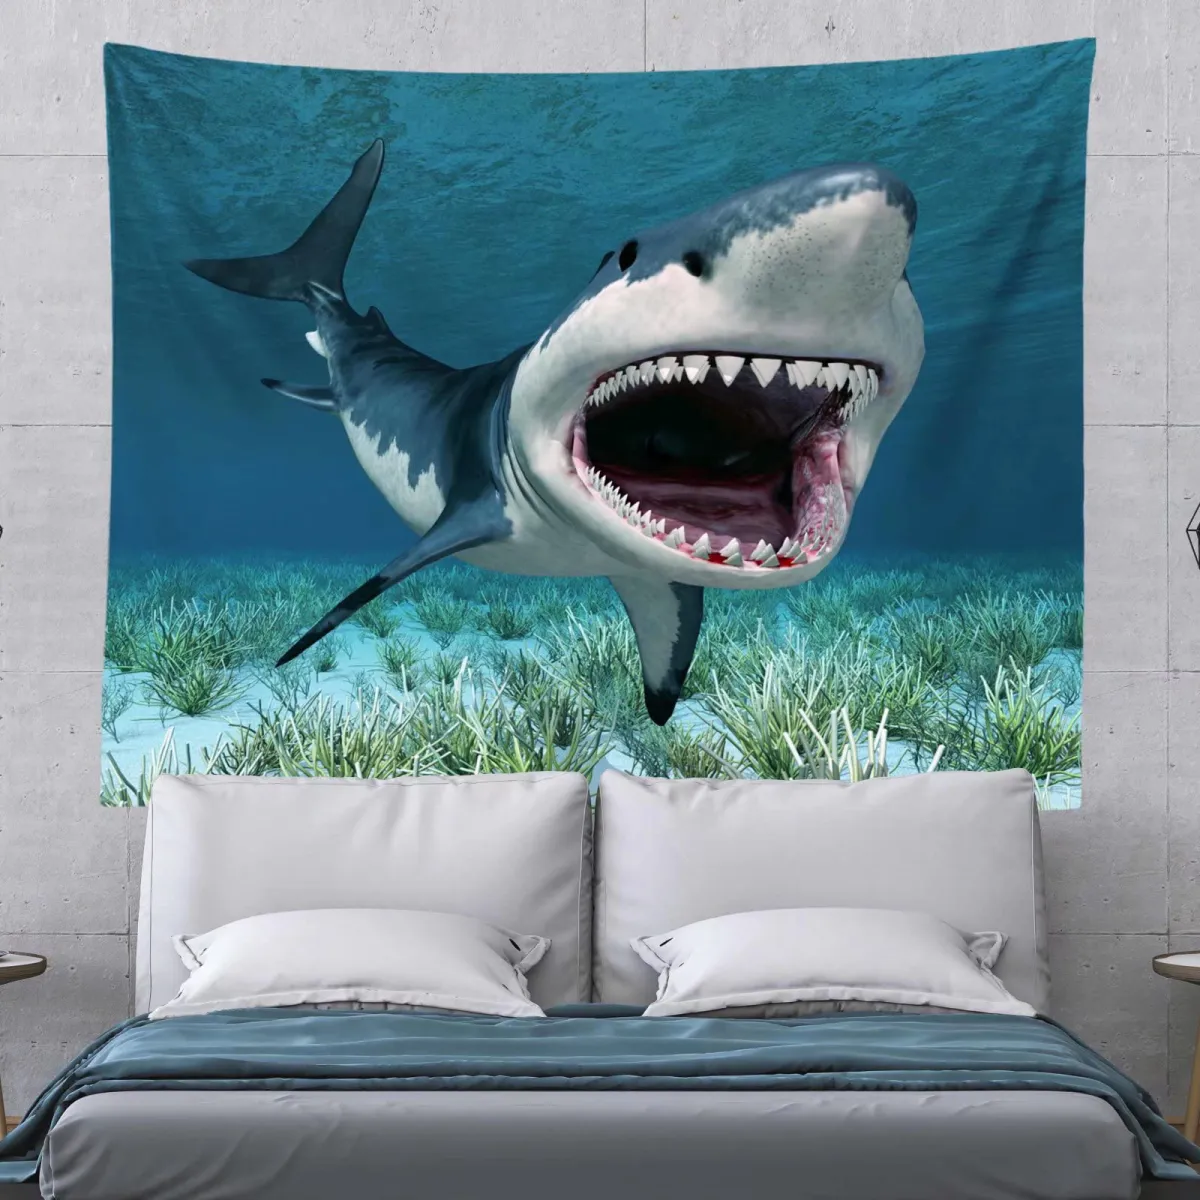 Thảm trang trí hình đại dương cá mập 3D - một sản phẩm độc đáo, tinh tế và đầy ấn tượng. Khám phá hình ảnh liên quan để trang trí cho ngôi nhà của bạn trở nên độc đáo hơn.